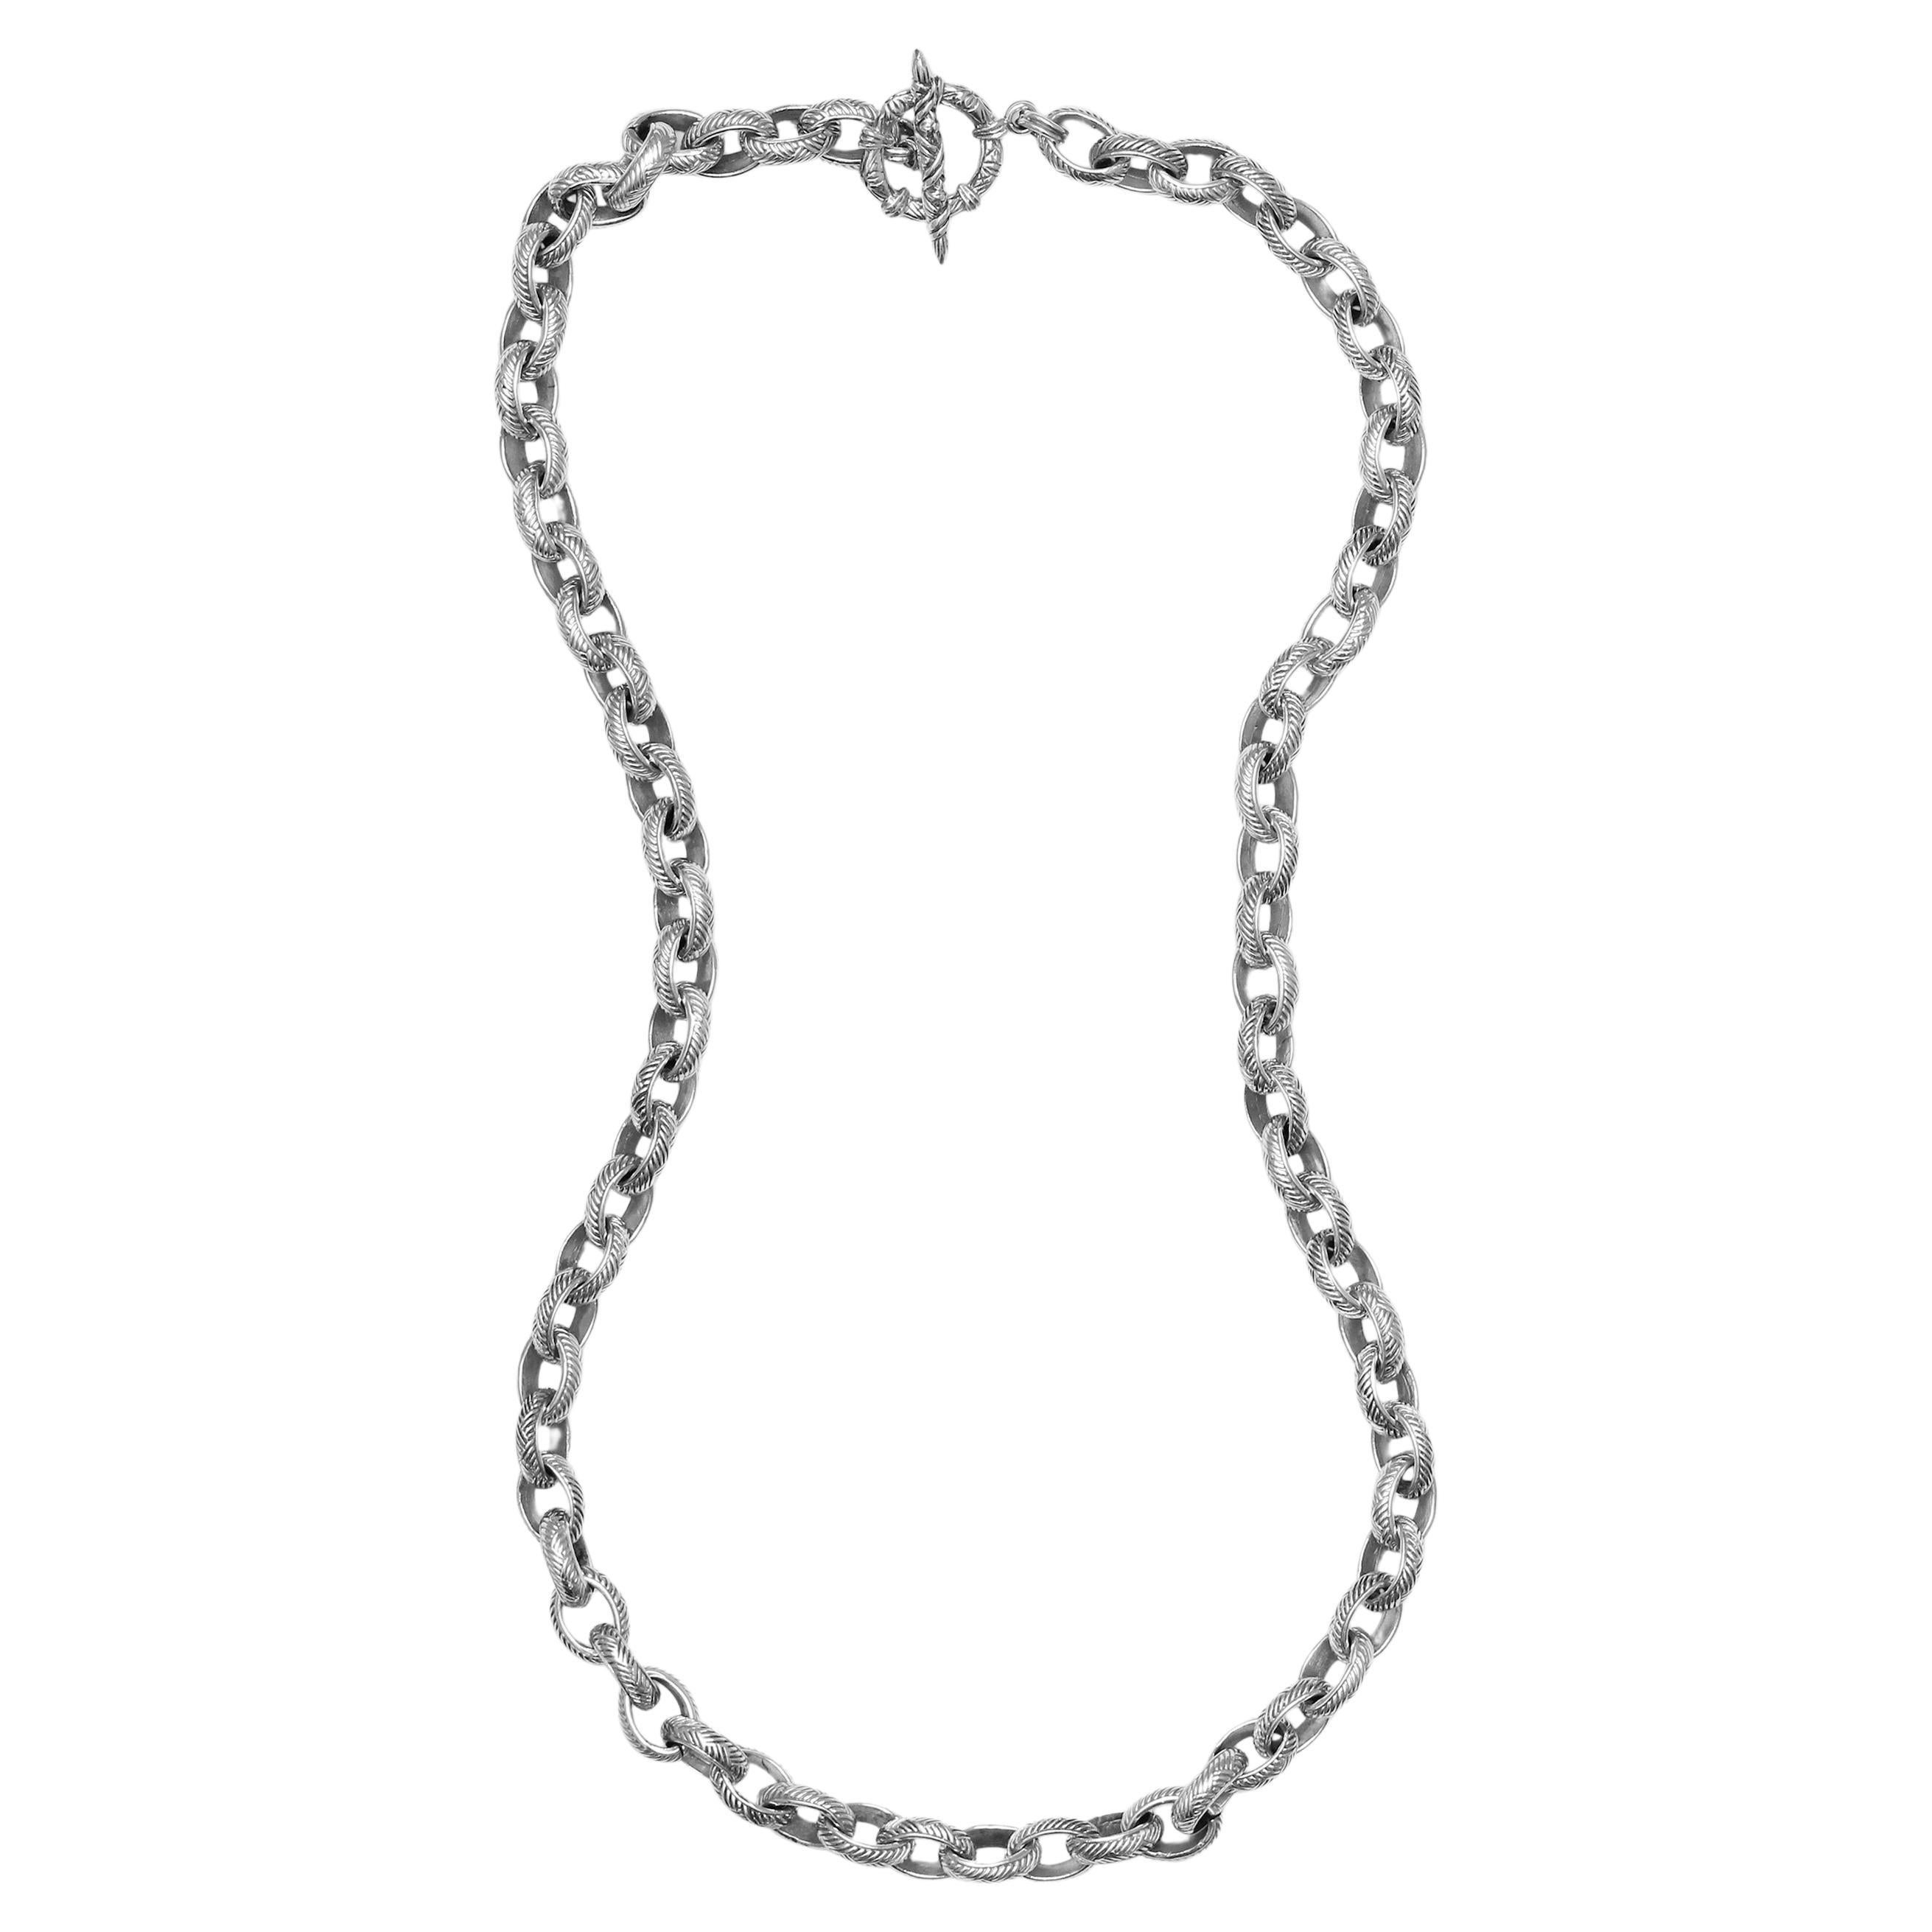 Unterschrift eingraviert Weave Linked Sterling Silber Kette Halskette